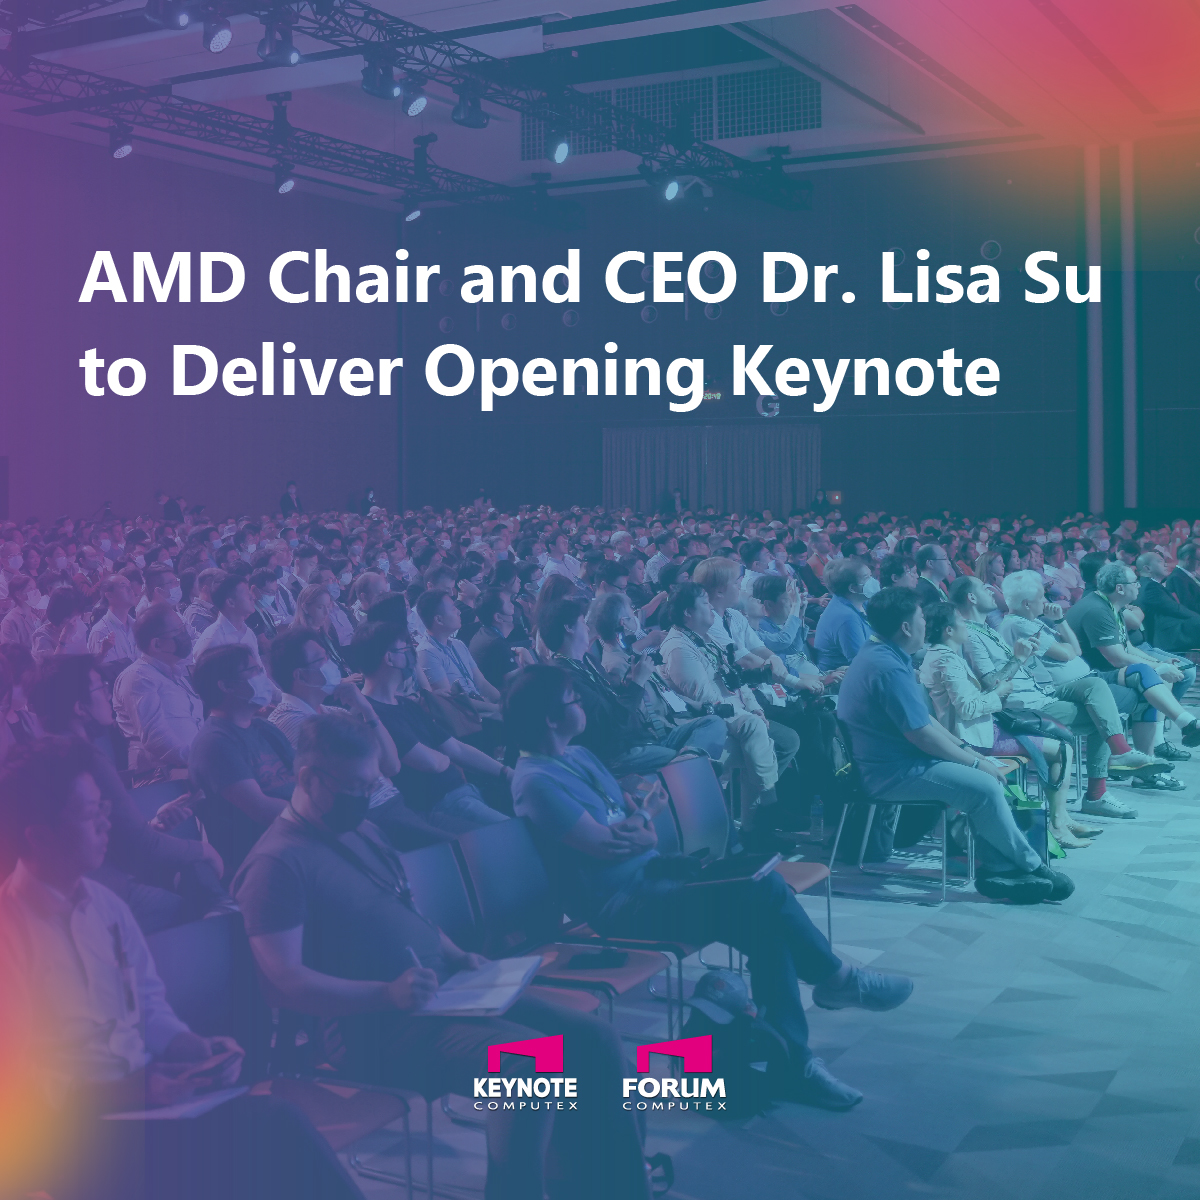 AMD, 컴퓨텍스 2024(6월 3일) 컨퍼런스에 기조연설 예정(AMD 닥터 리사 수 회장) 컴퓨터 / 하드웨어 기글하드웨어